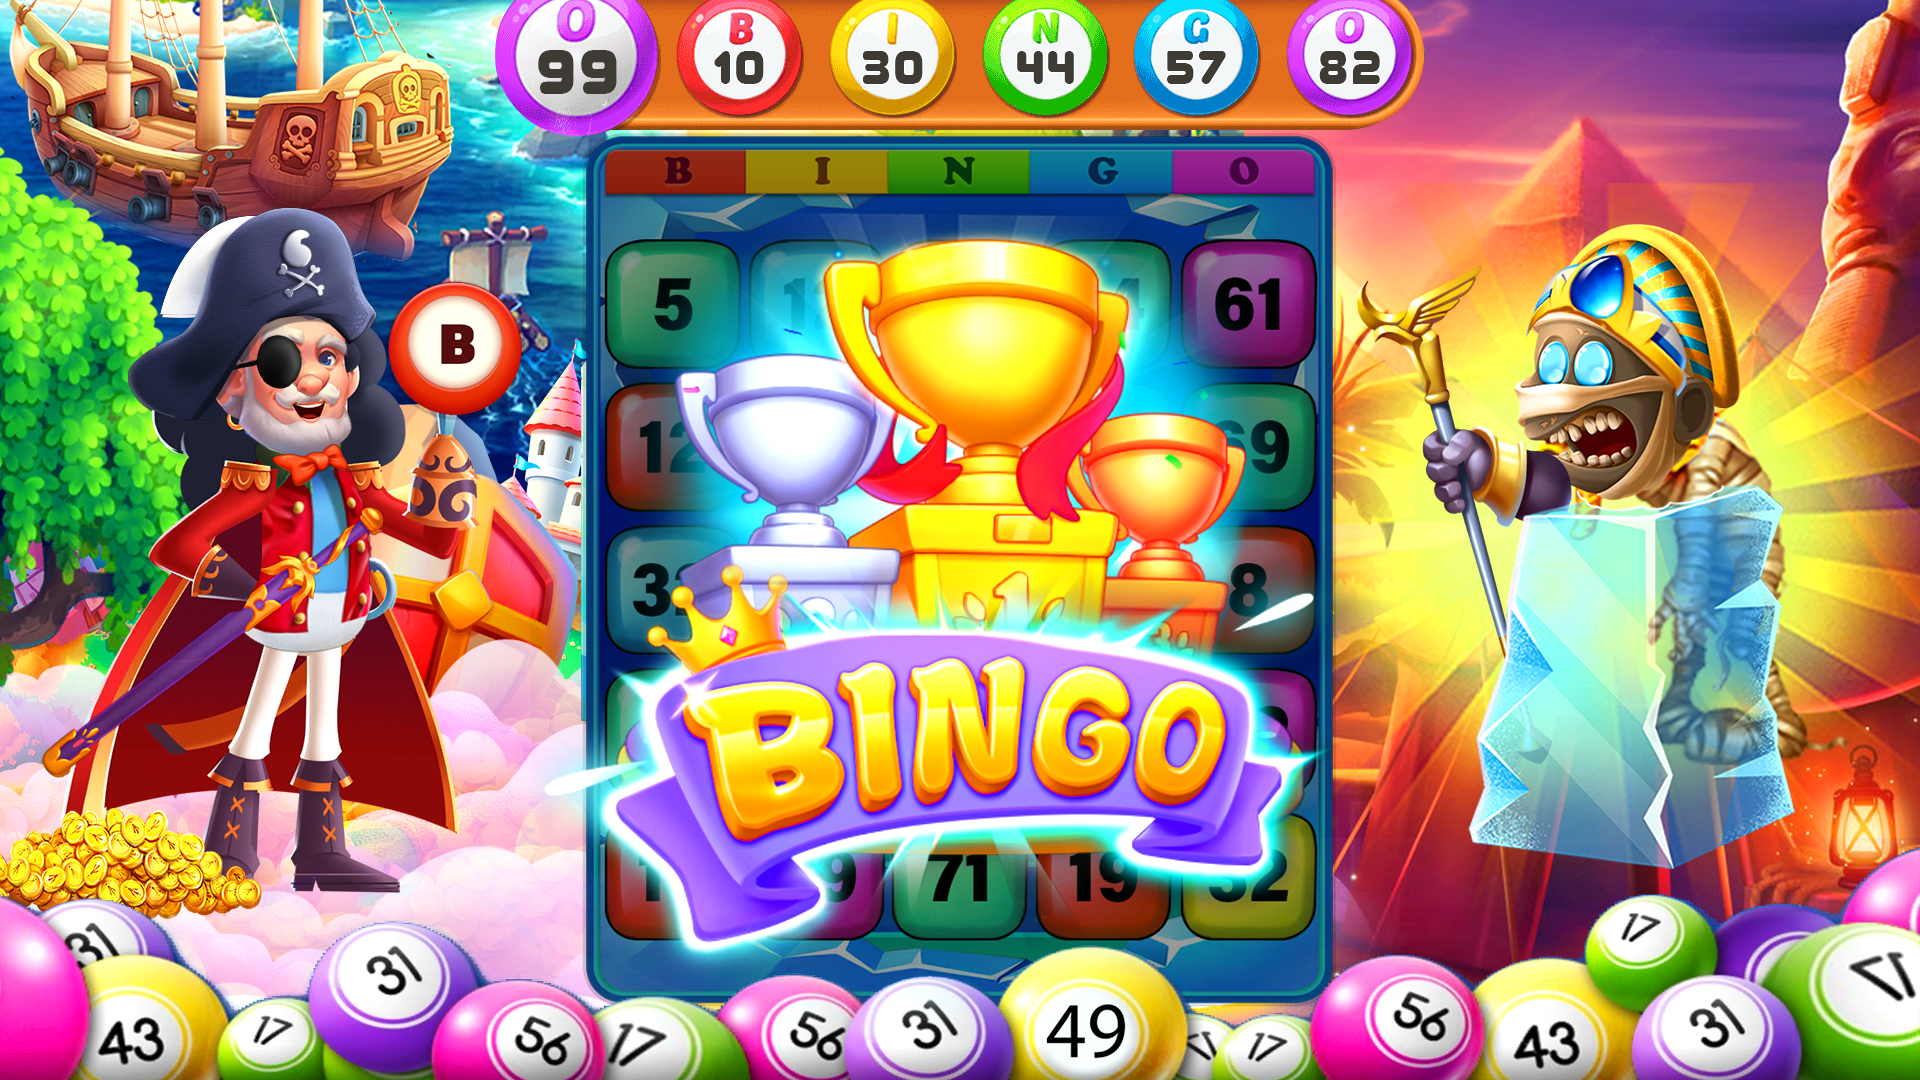 Bingo Games Online